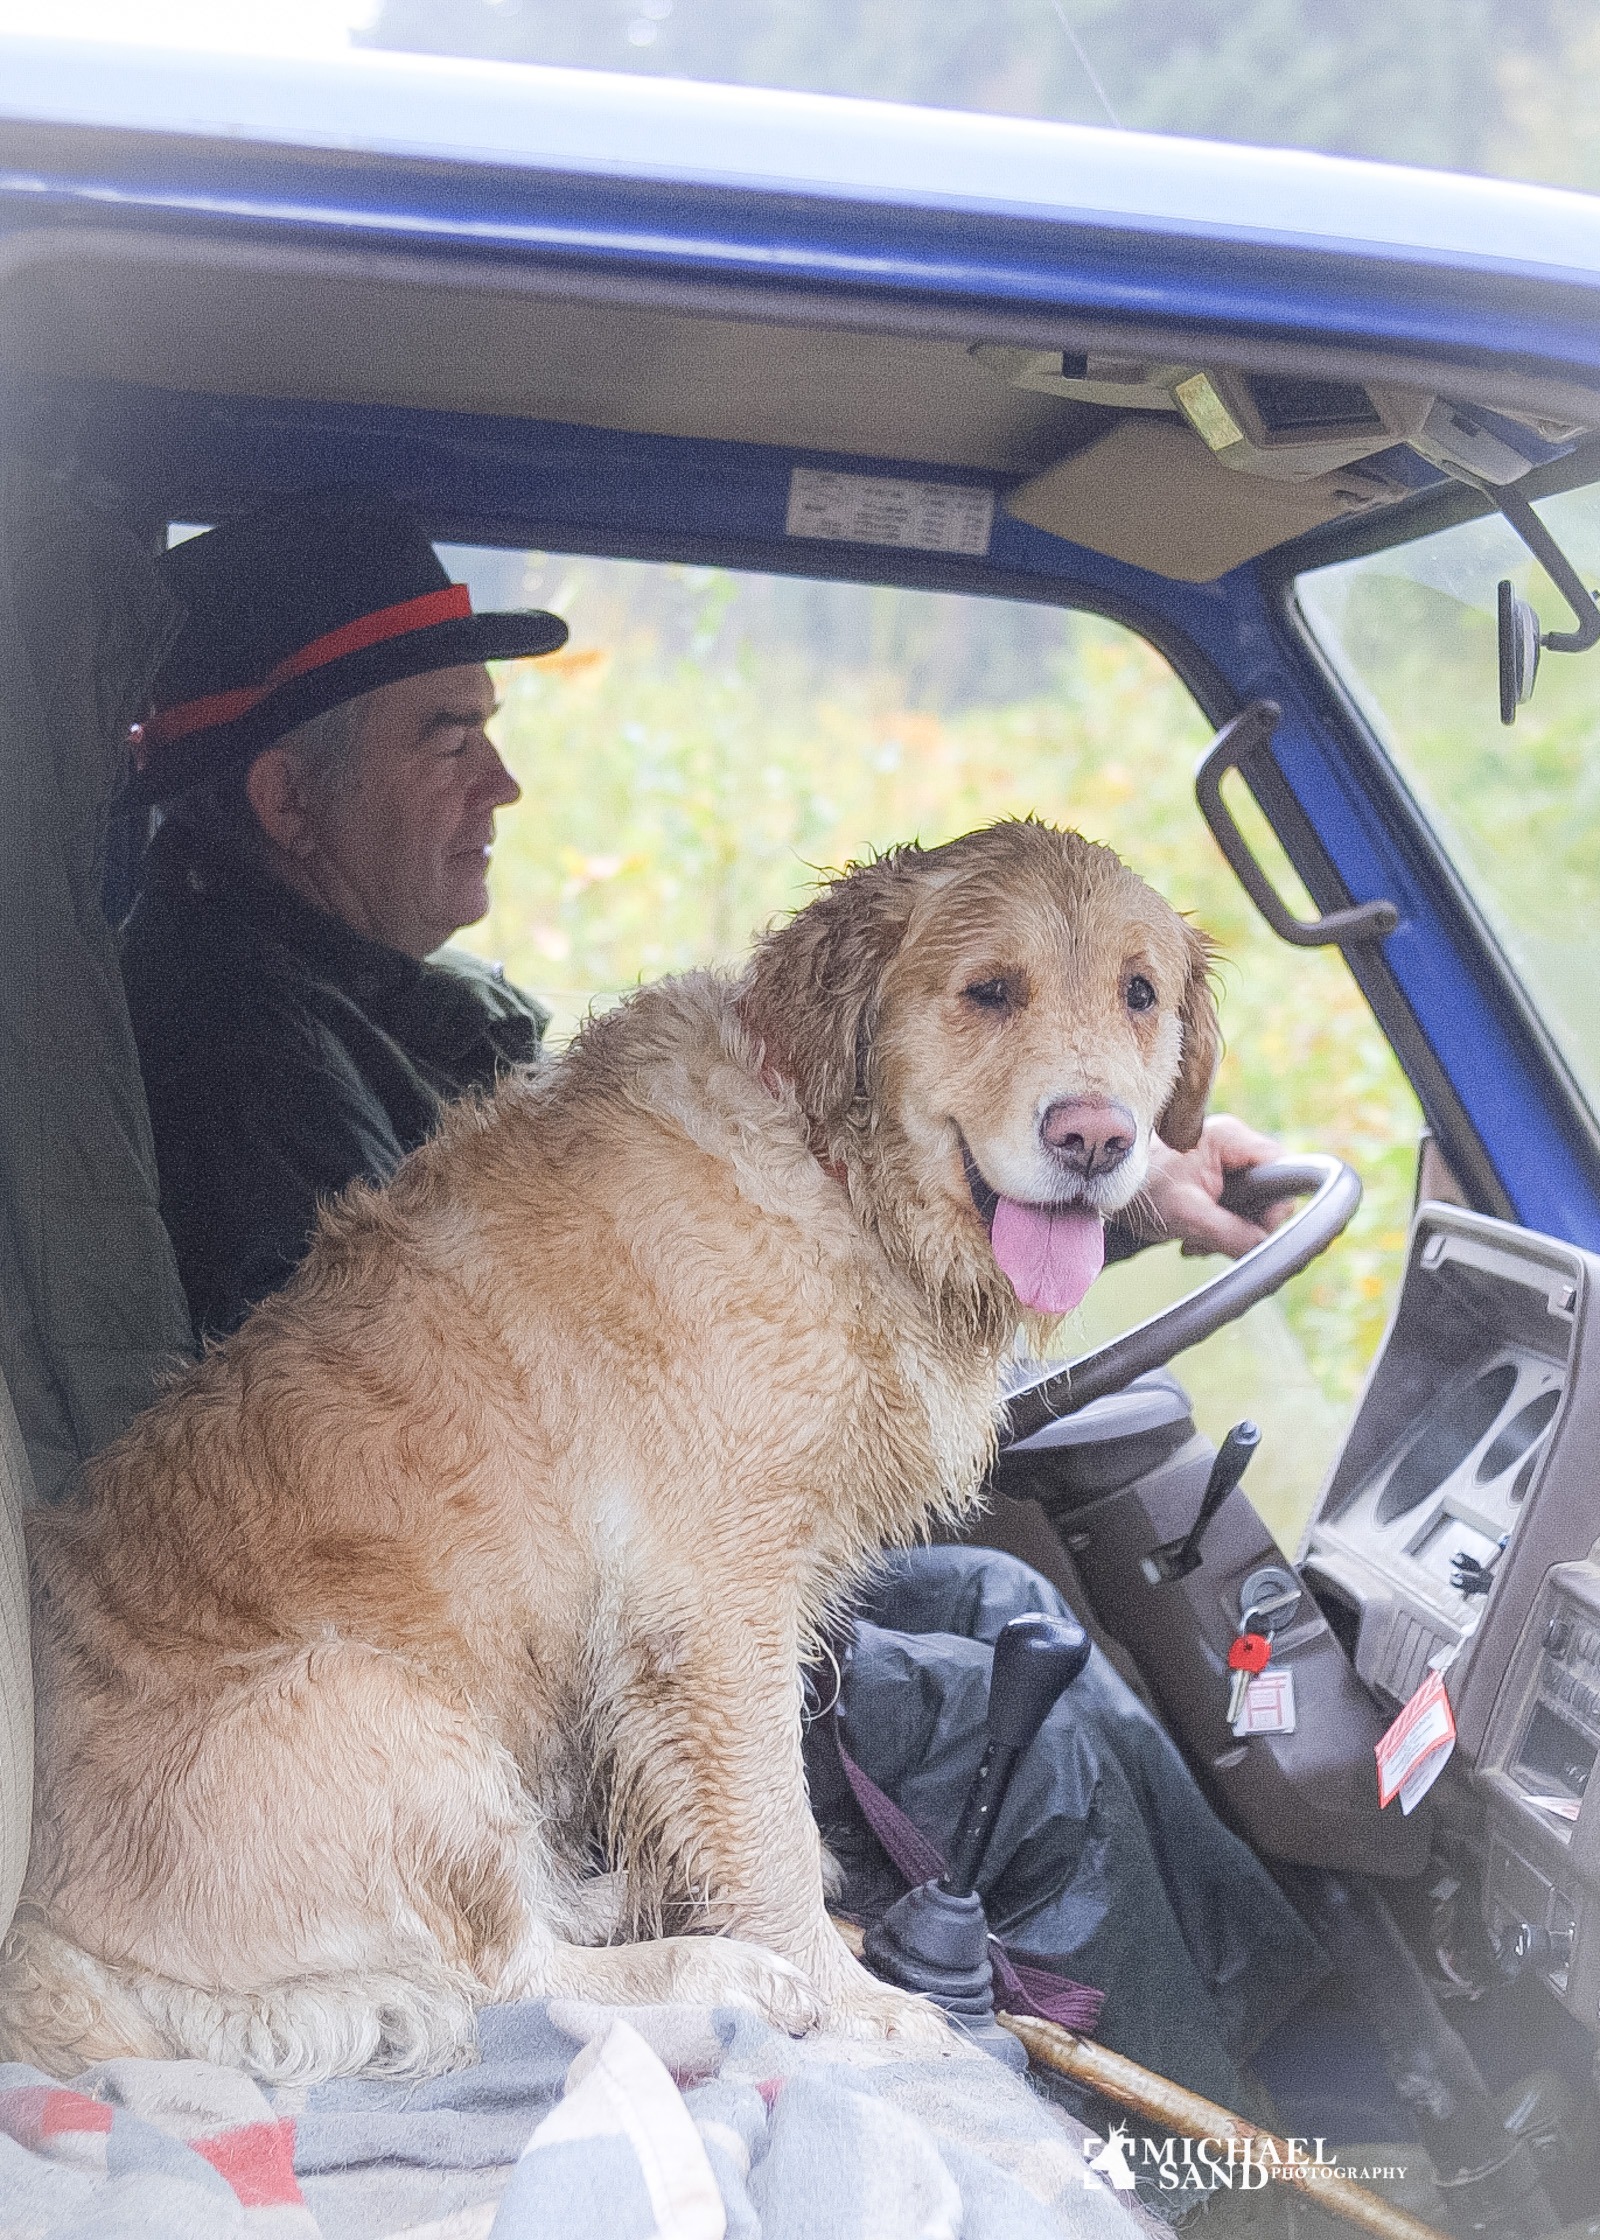 fordrejer Forøge skrædder Hund i bil: Hvordan gør man hunden tryg ved at opholde sig i bilen?